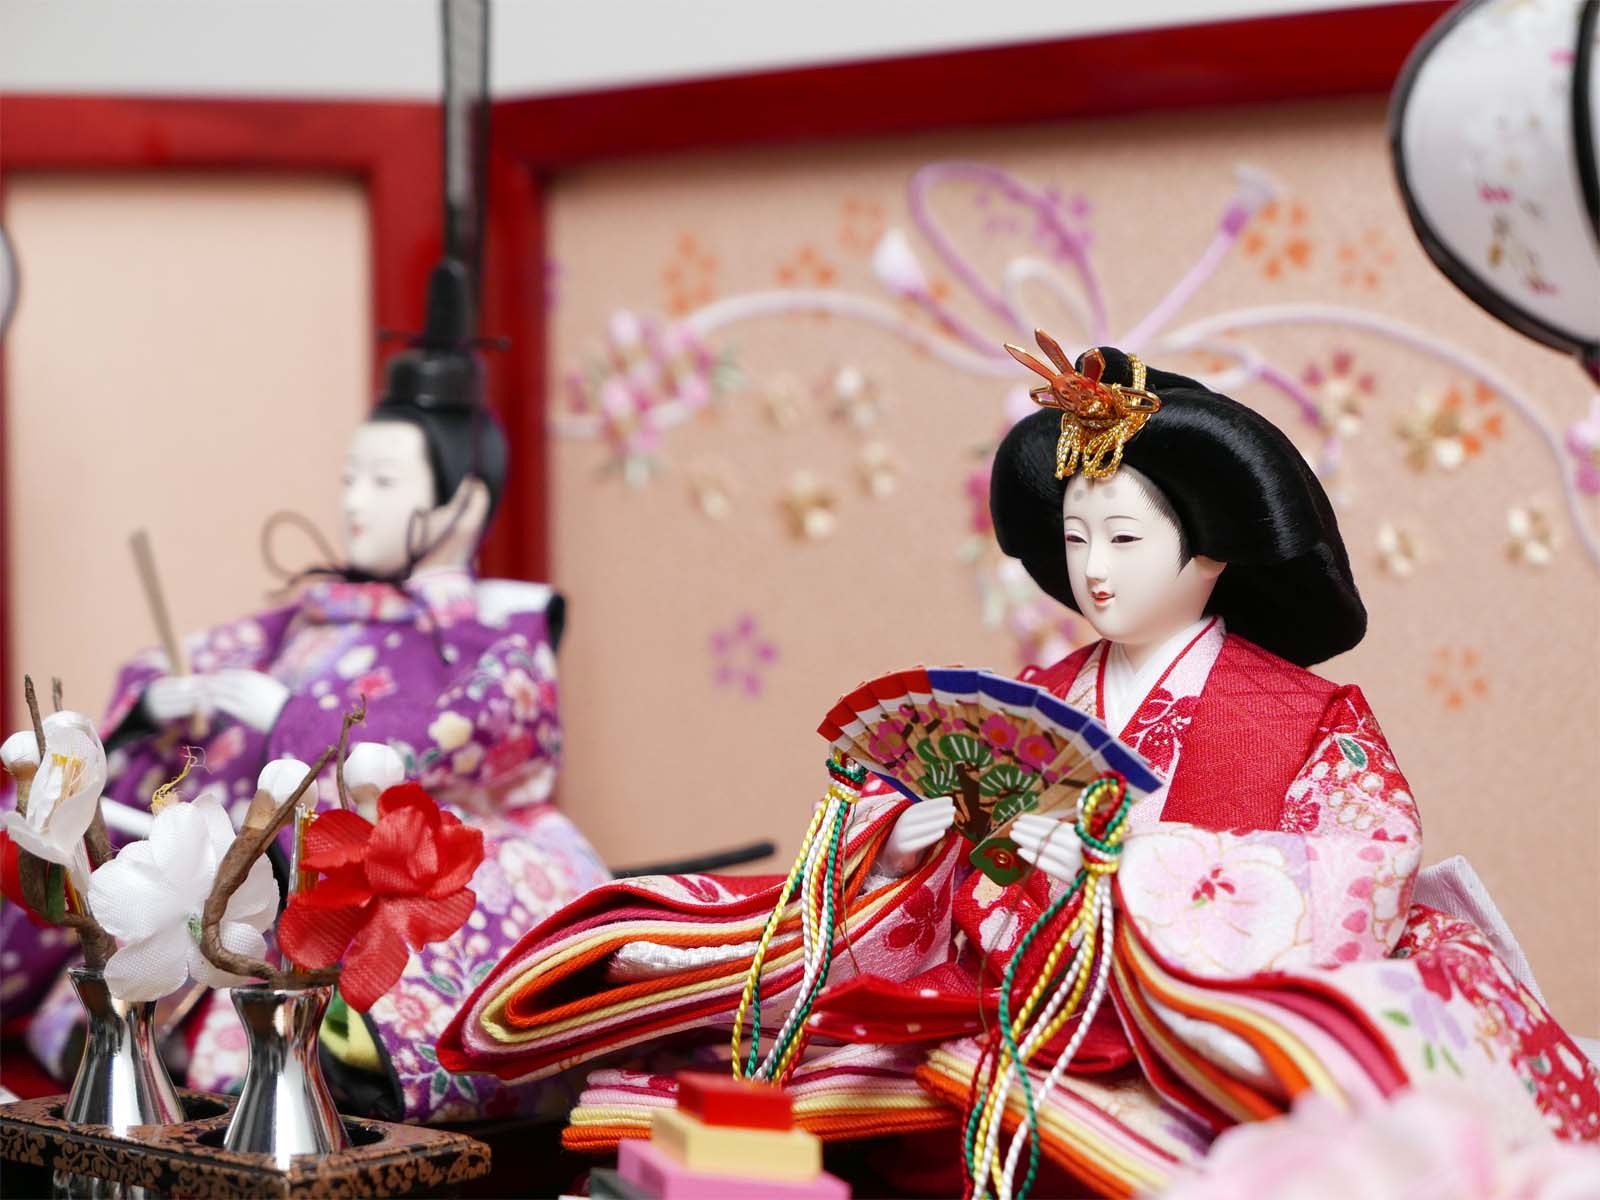 鮮やかな赤い友禅衣装雛人形桜リボン赤塗り収納飾り